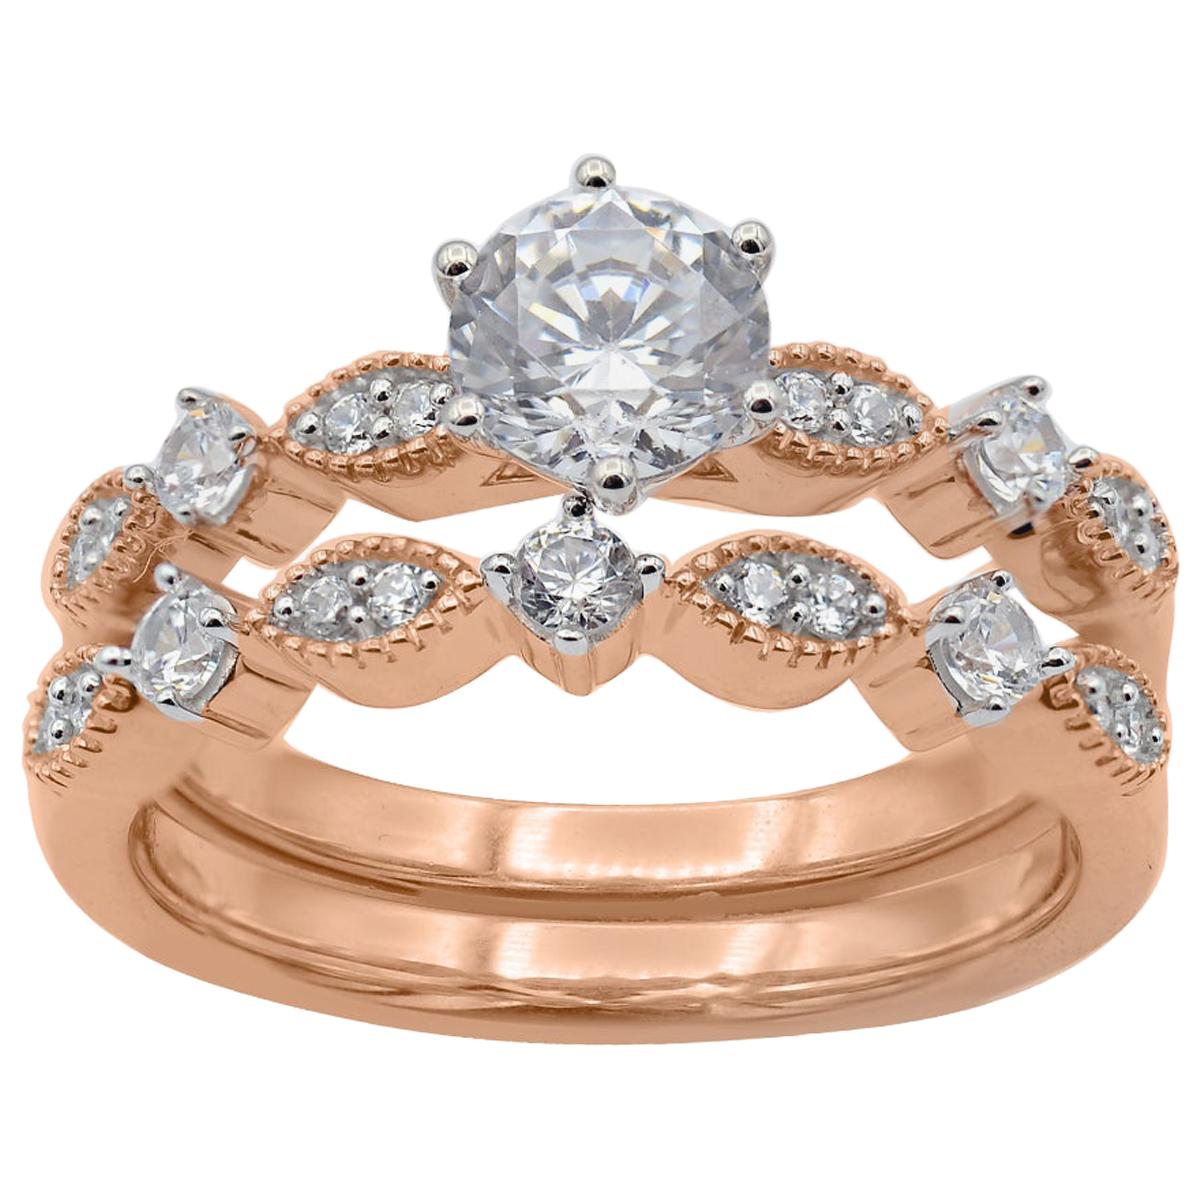 TJD 1.00 Carat Round Diamond 18 Karat Rose Gold Scallop Shank Bridal Ring Set